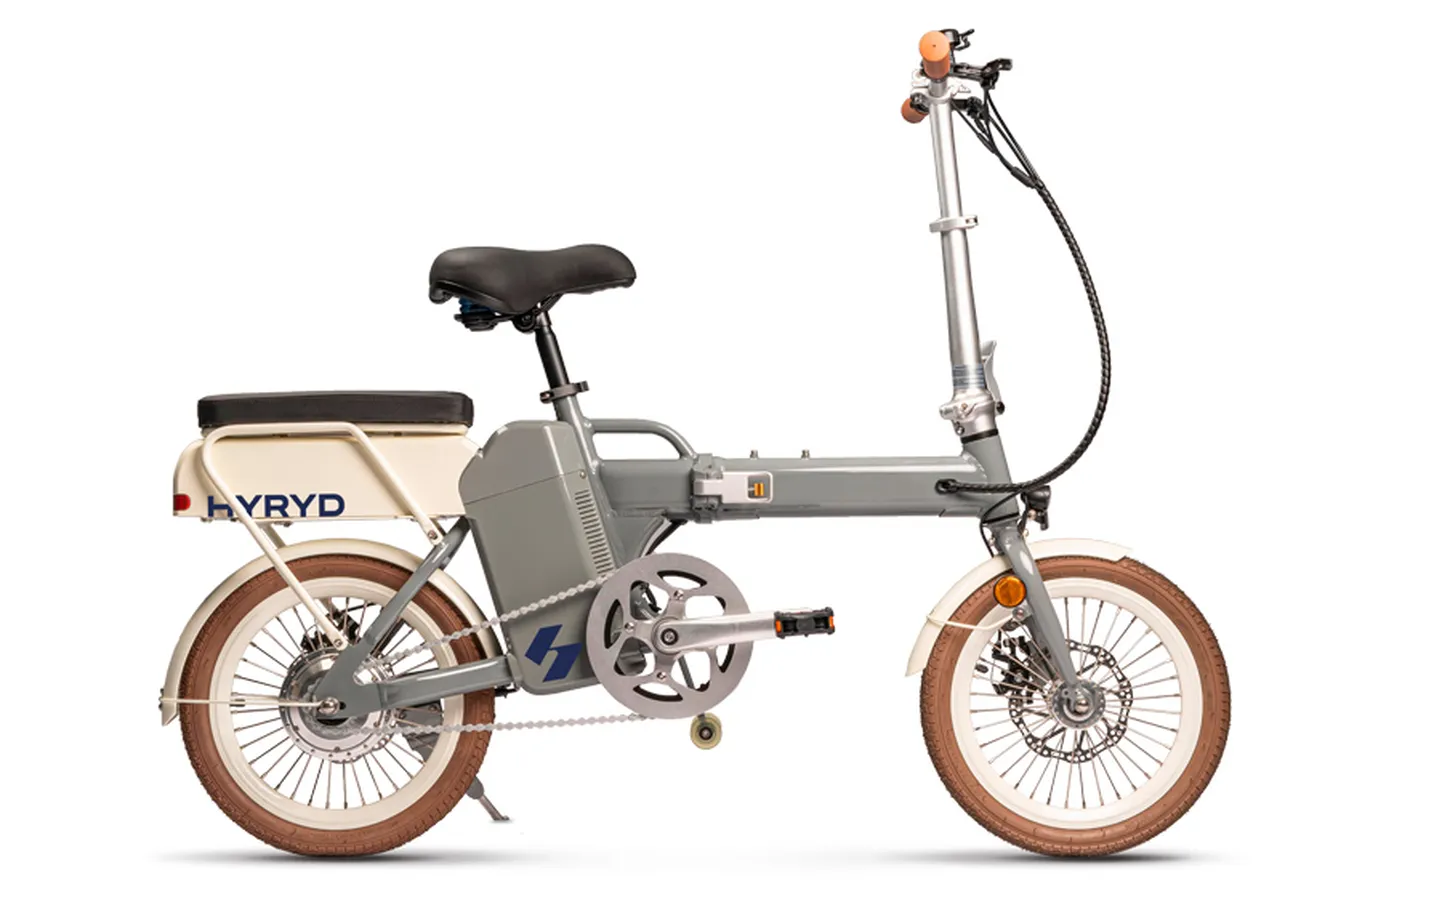 HYRYD e-jalgrattad kulutavad sõiduks vesinikku, mille jaoks on olemas kompaktne päikeseenergial töötav vesinikugeneraator, mis võimaldab toota rohelist vesinikku.